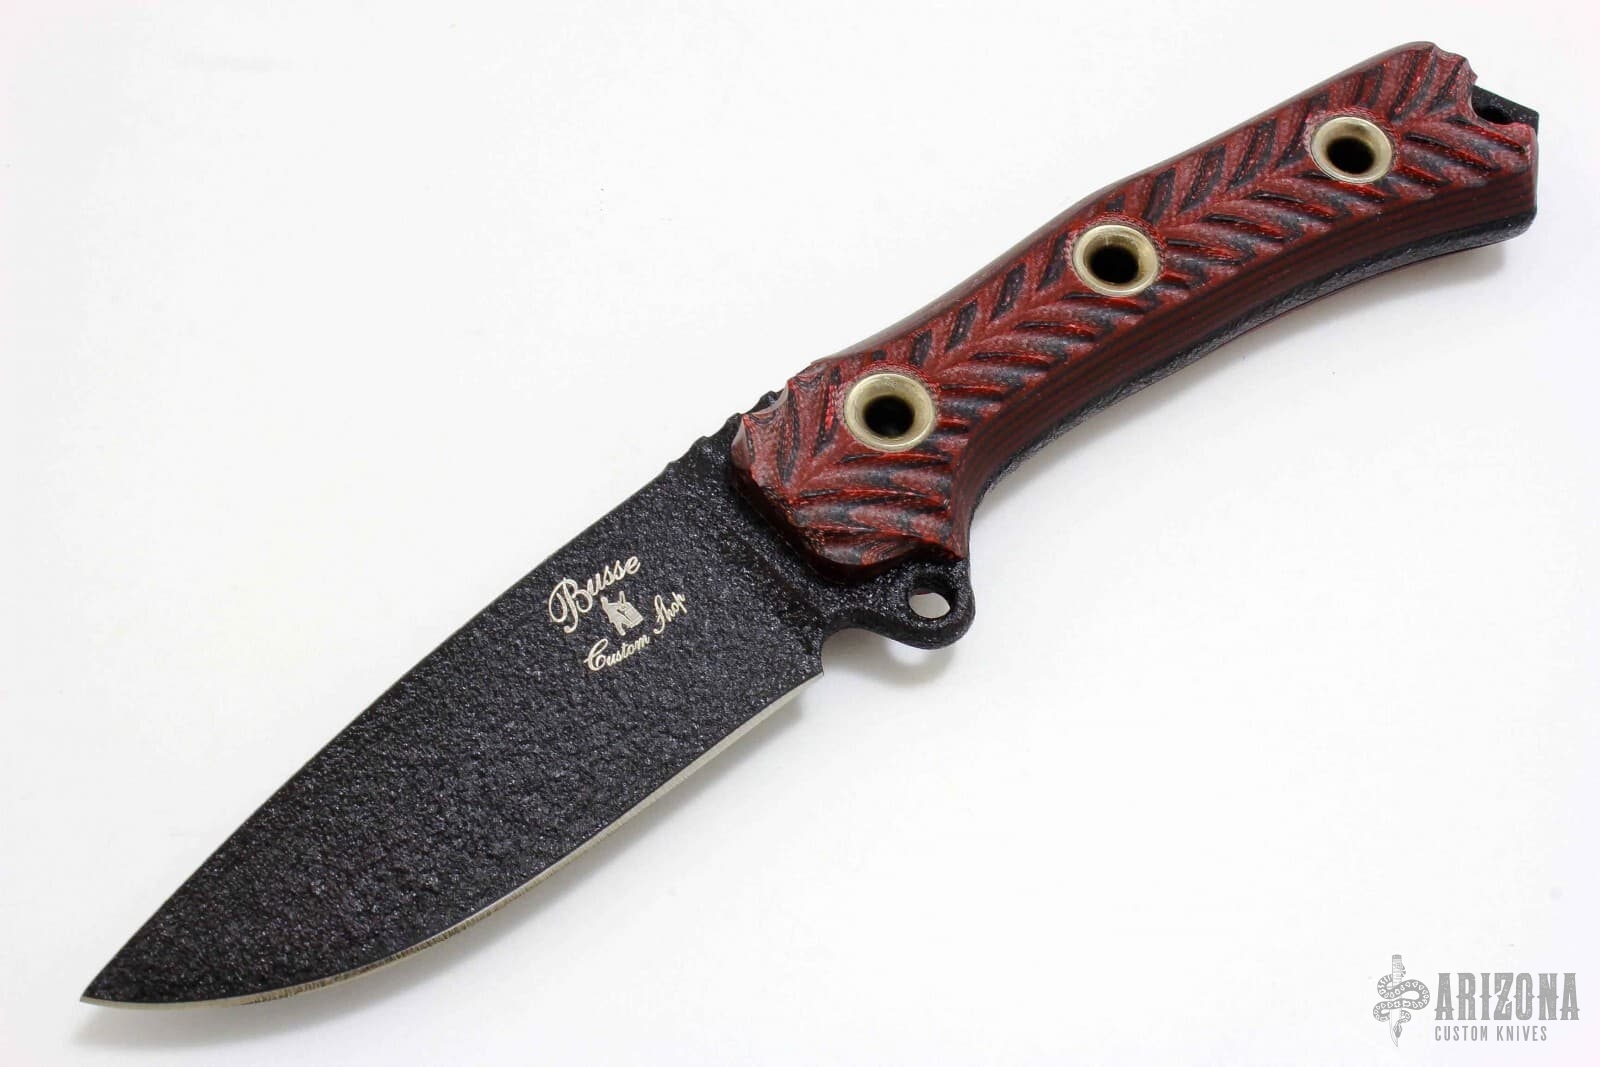 3/4 AR | Arizona Custom Knives